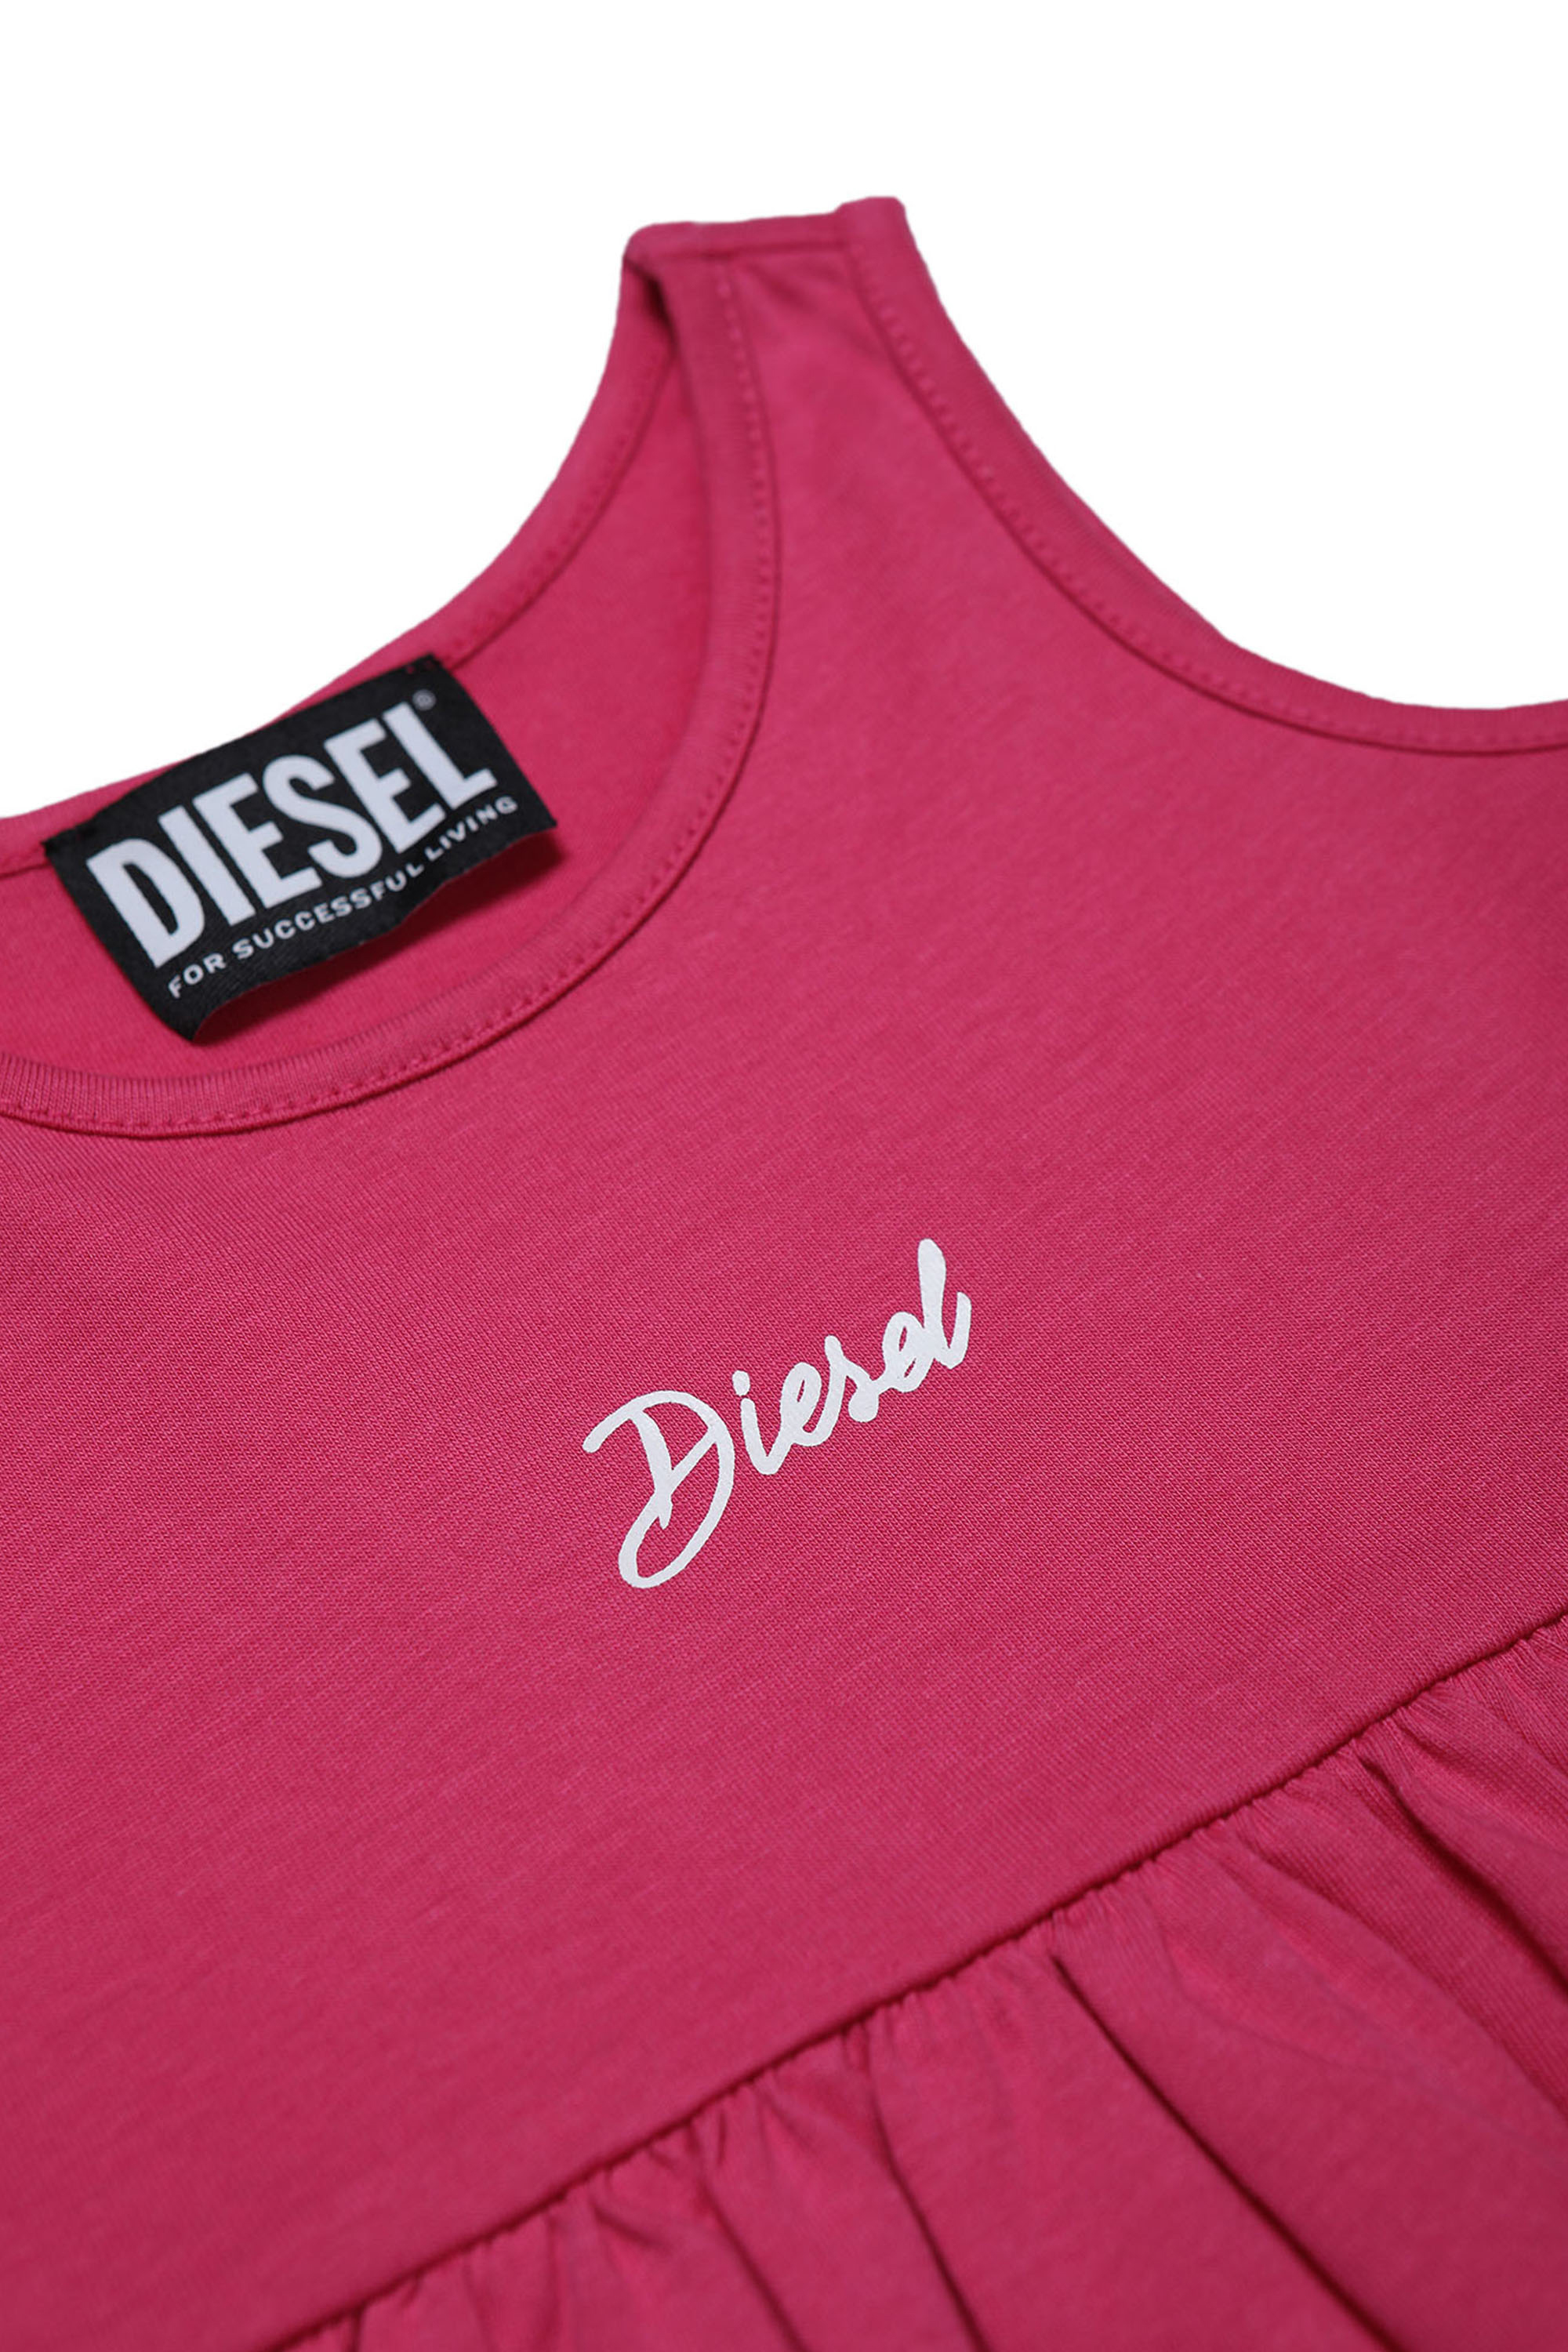 Diesel - MCUIFULIB, Pink - Image 3